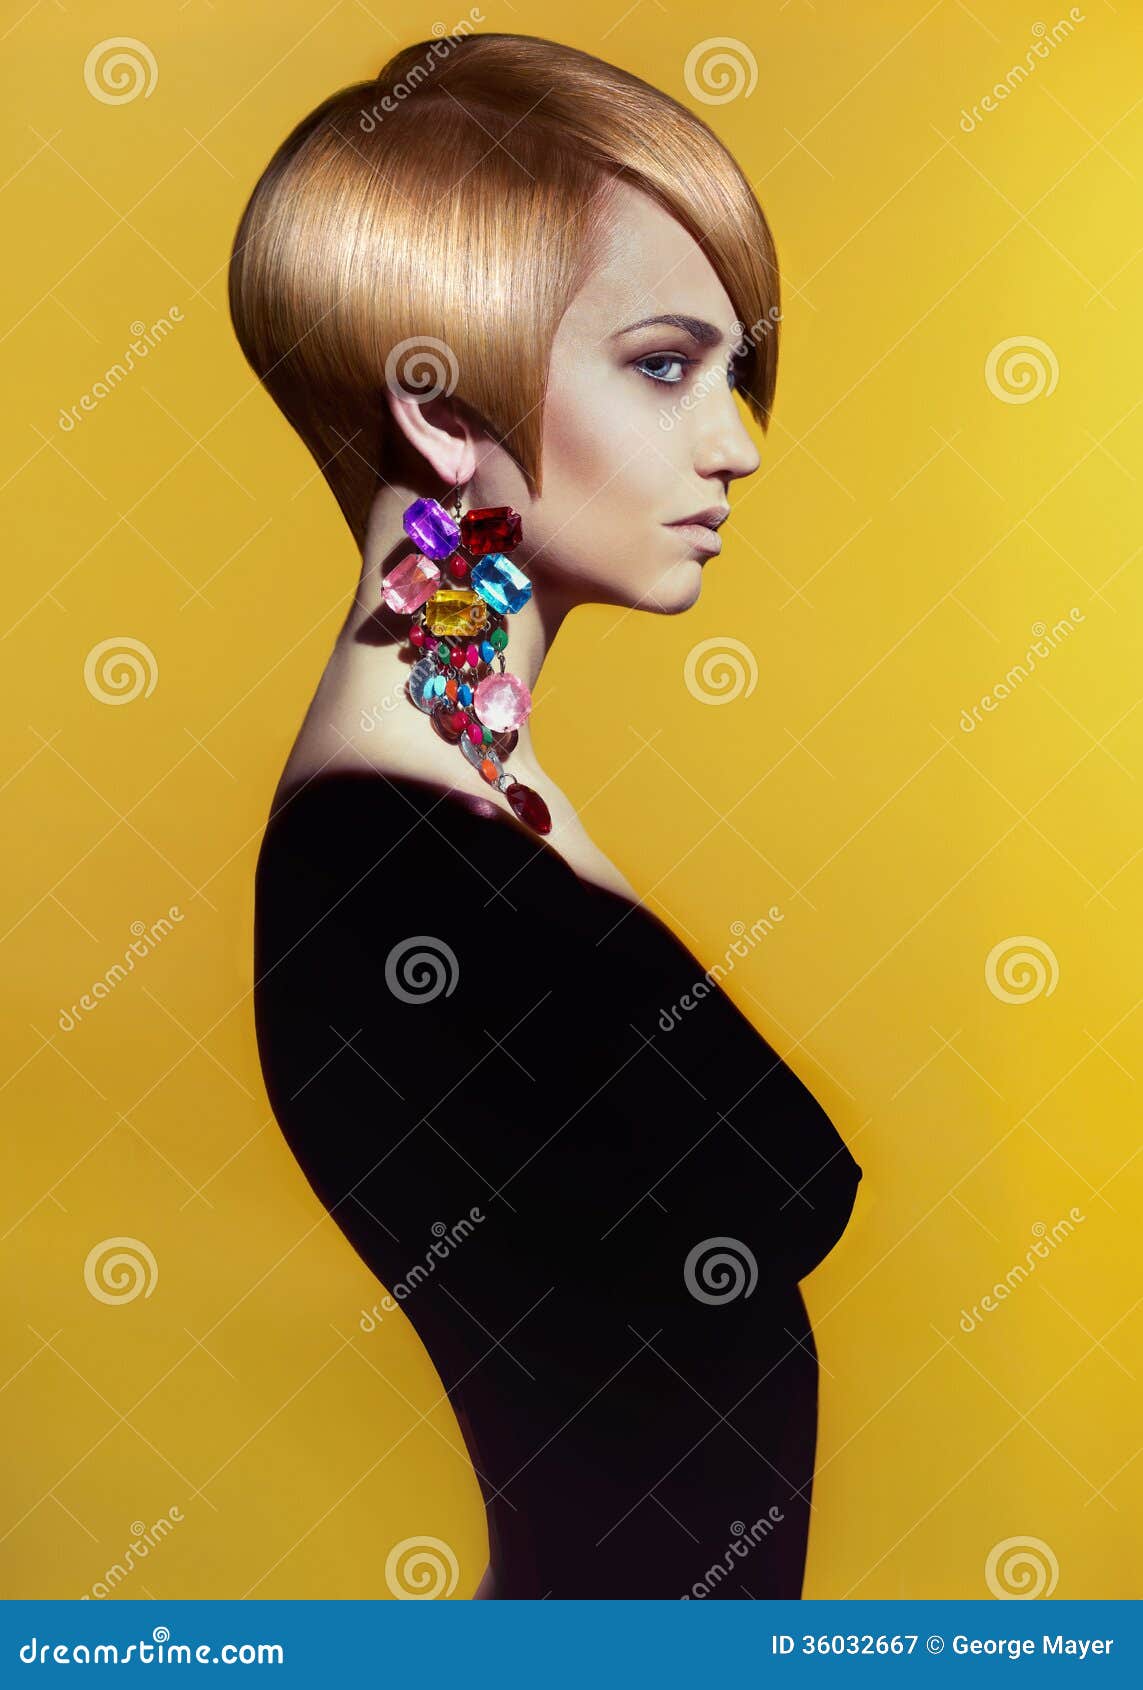 lady with stylish hairdo